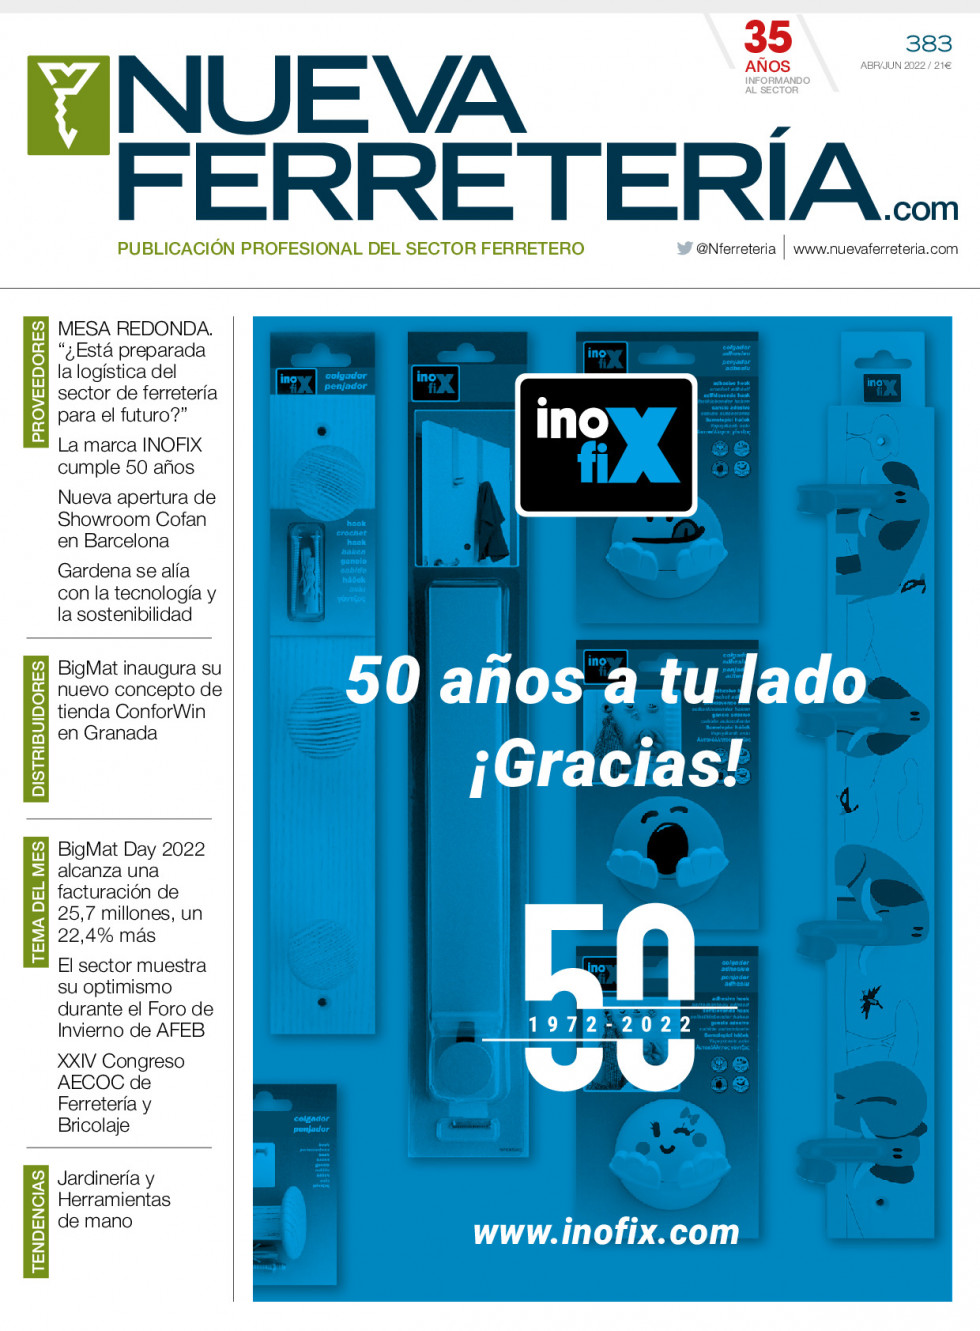 Ferreteria383